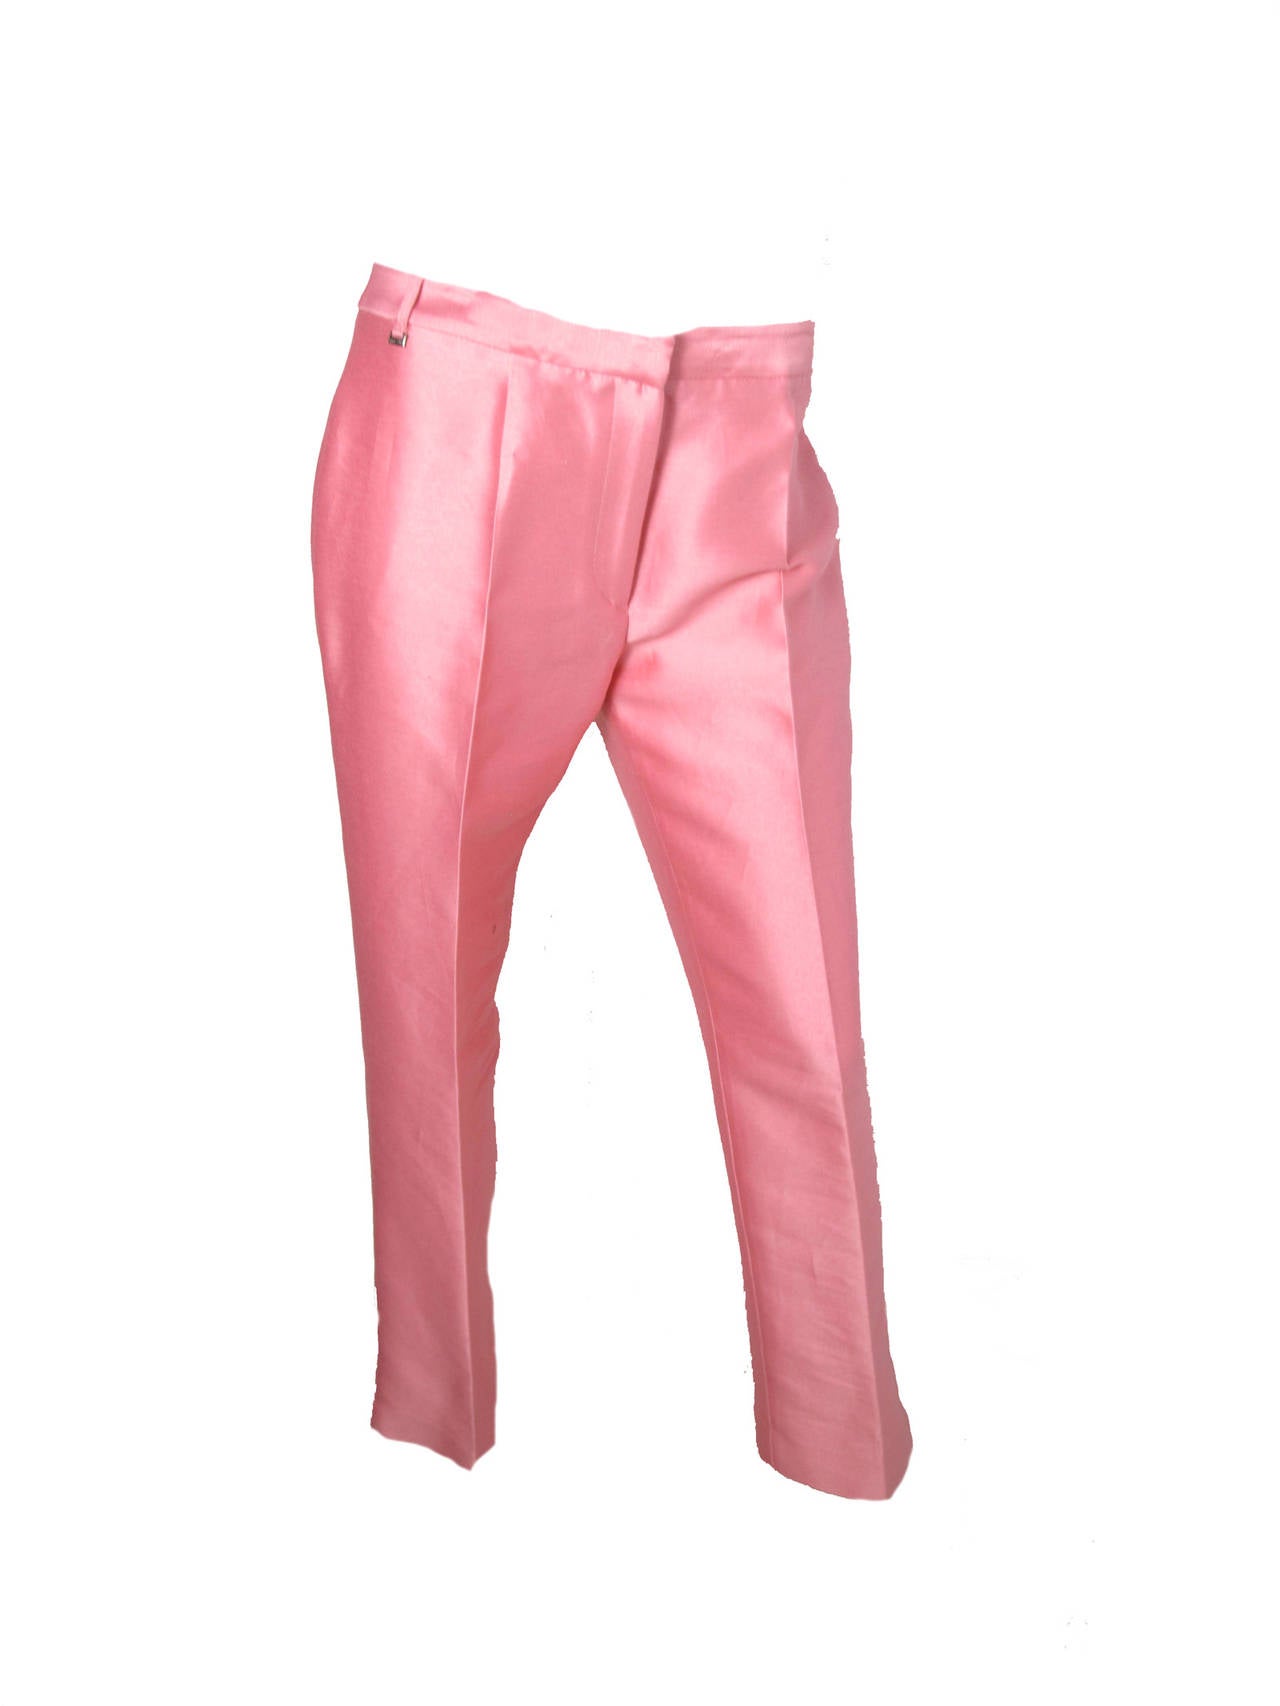 Versus pink silk/cotton suit. Condition: Excellent. Blazer 38